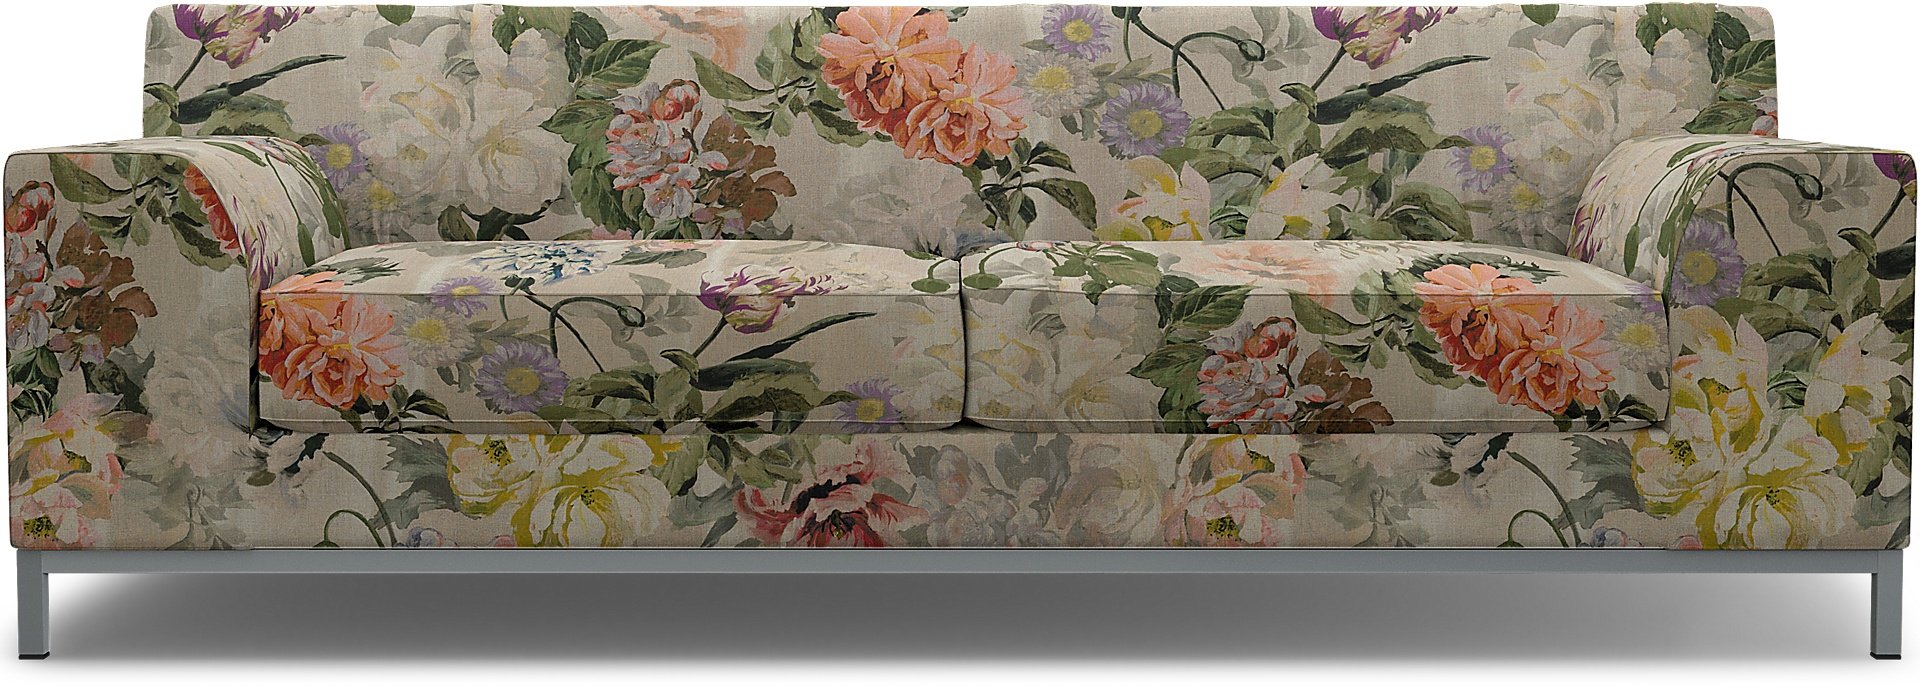 IKEA - Kramfors 3 Seater Sofa Cover, Delft Flower - Tuberose, Linen - Bemz